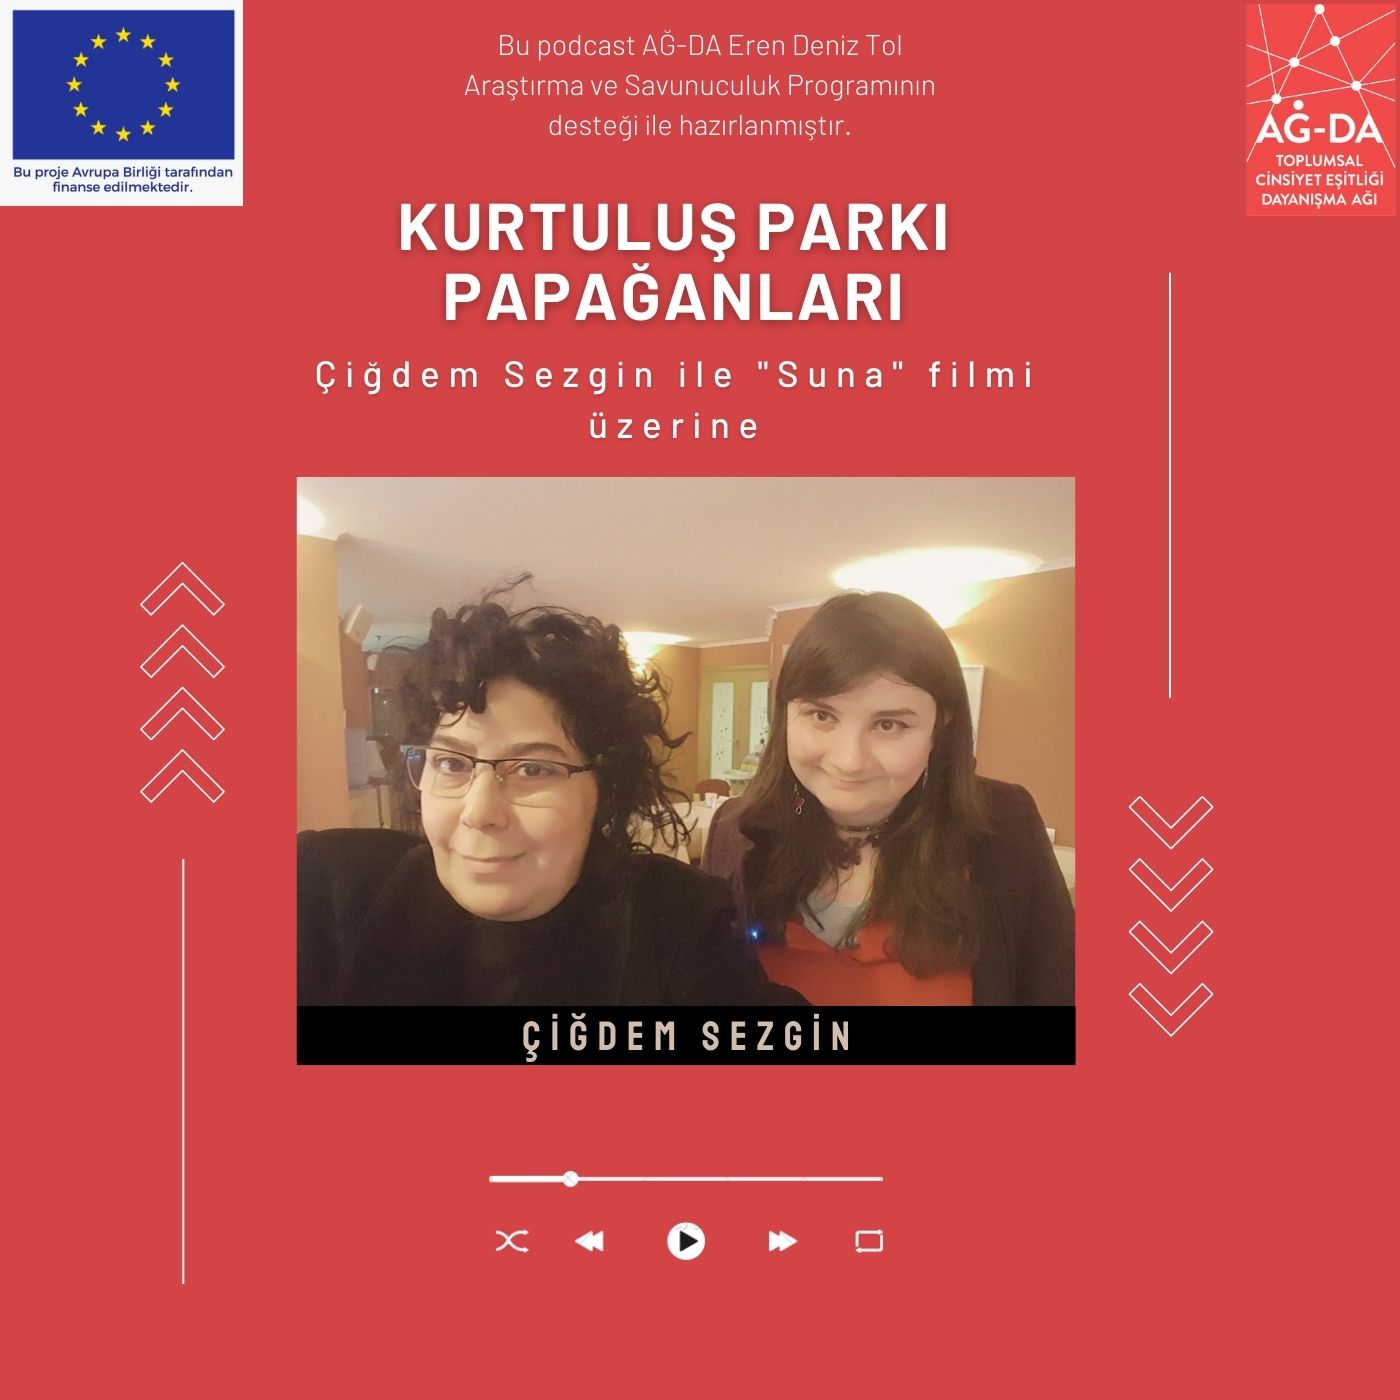 Sinema Yönetmeni Çiğdem Sezgin ile Podcast Söyleşisi Yayında!